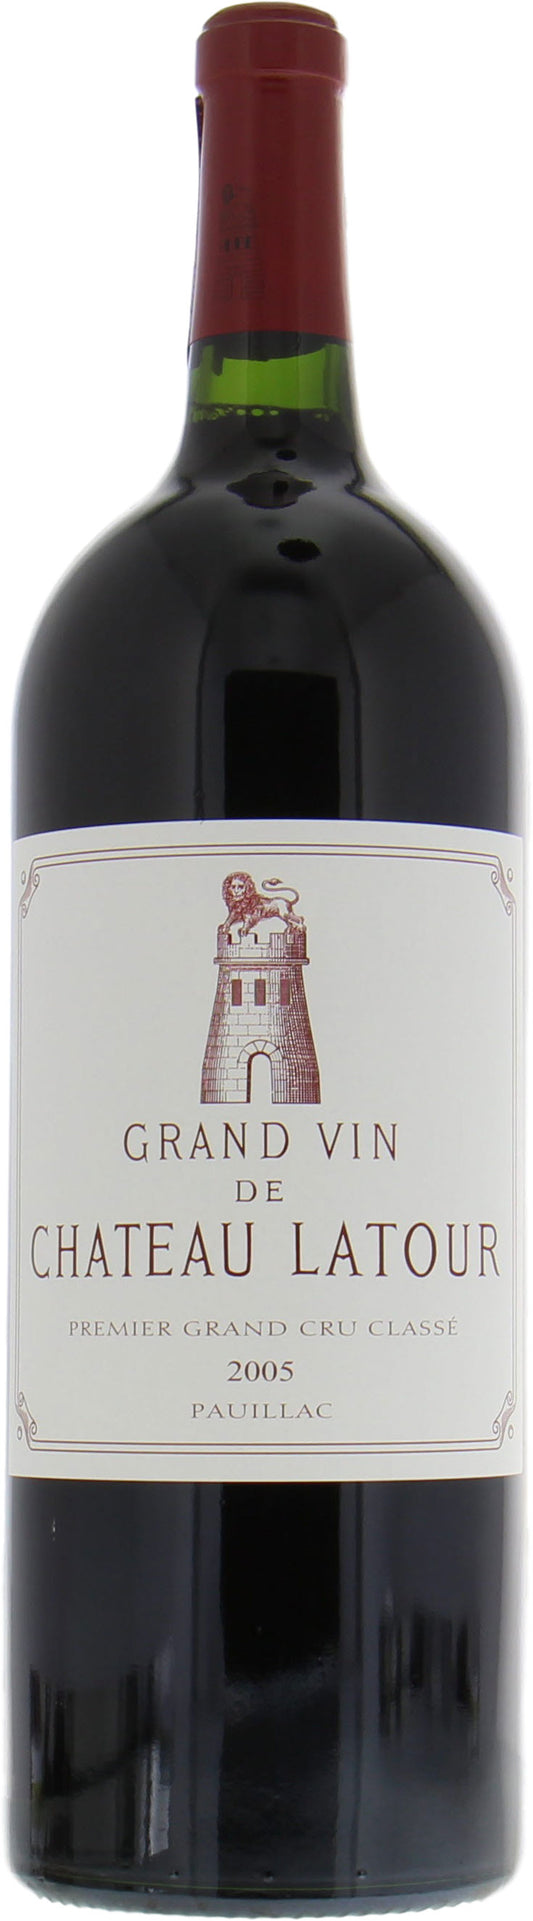 宏康商行收購紅酒  高價回收 拉圖 Chateau Latour Pauillac 1er Cru 2005 系列紅酒